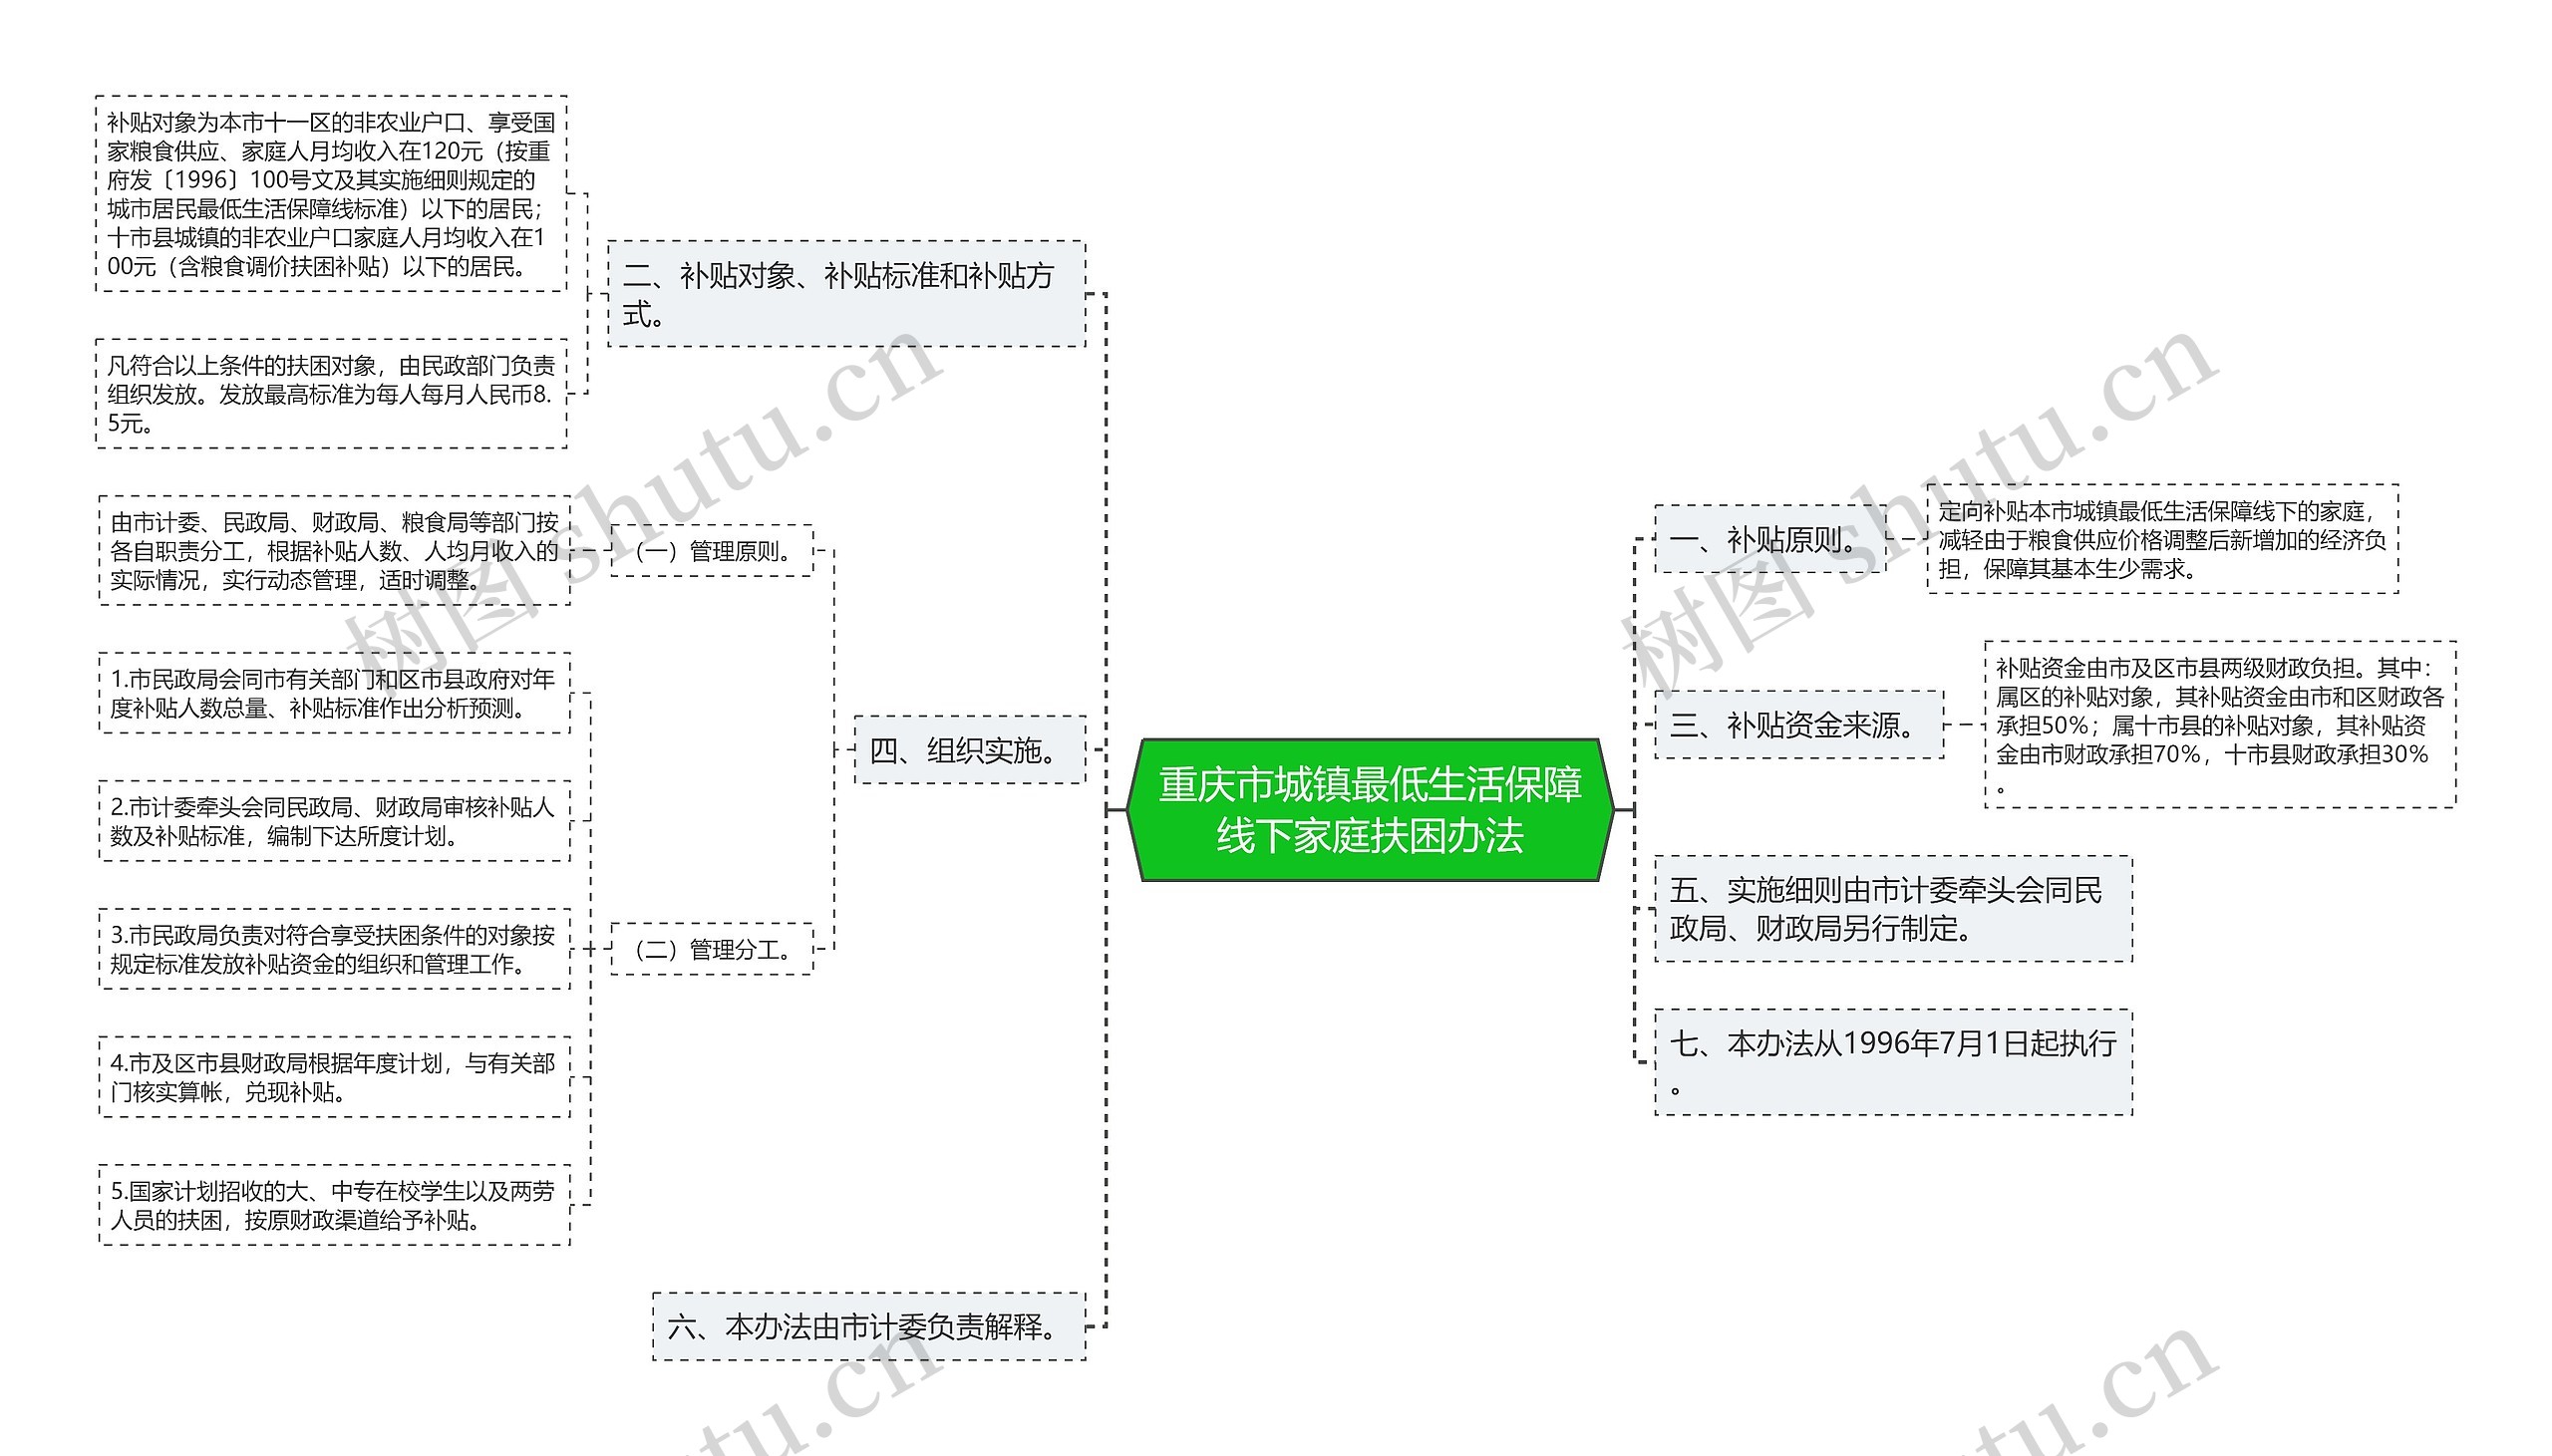 重庆市城镇最低生活保障线下家庭扶困办法思维导图